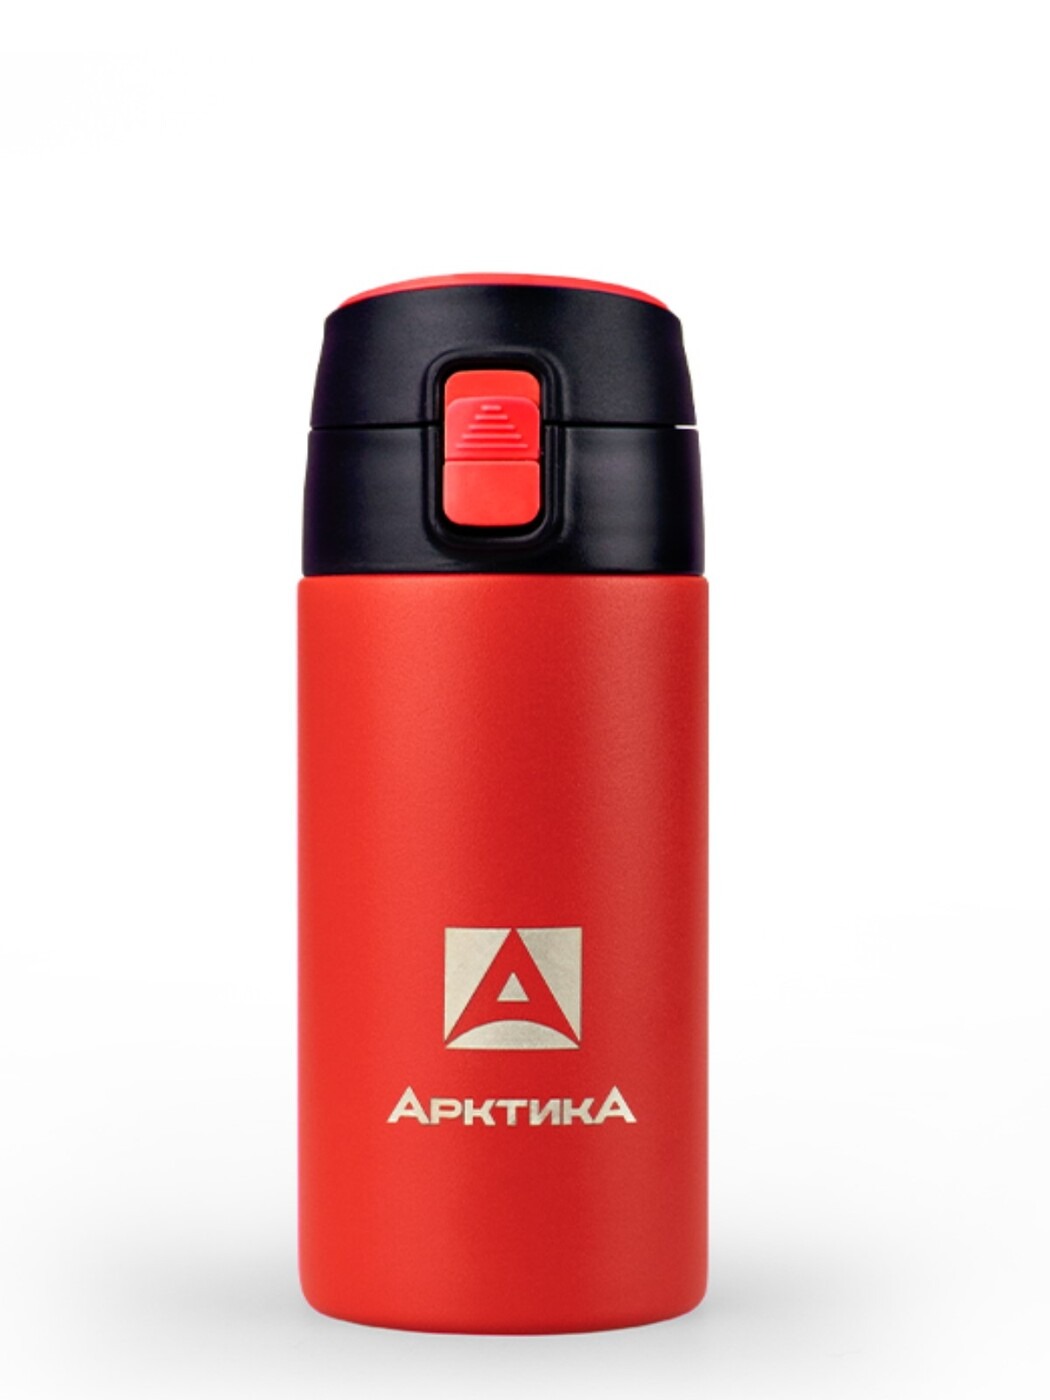 фото Ark-705-350 термос питьевой вакуумный, бытовой, тм арктика, 350 мл текстурный красный